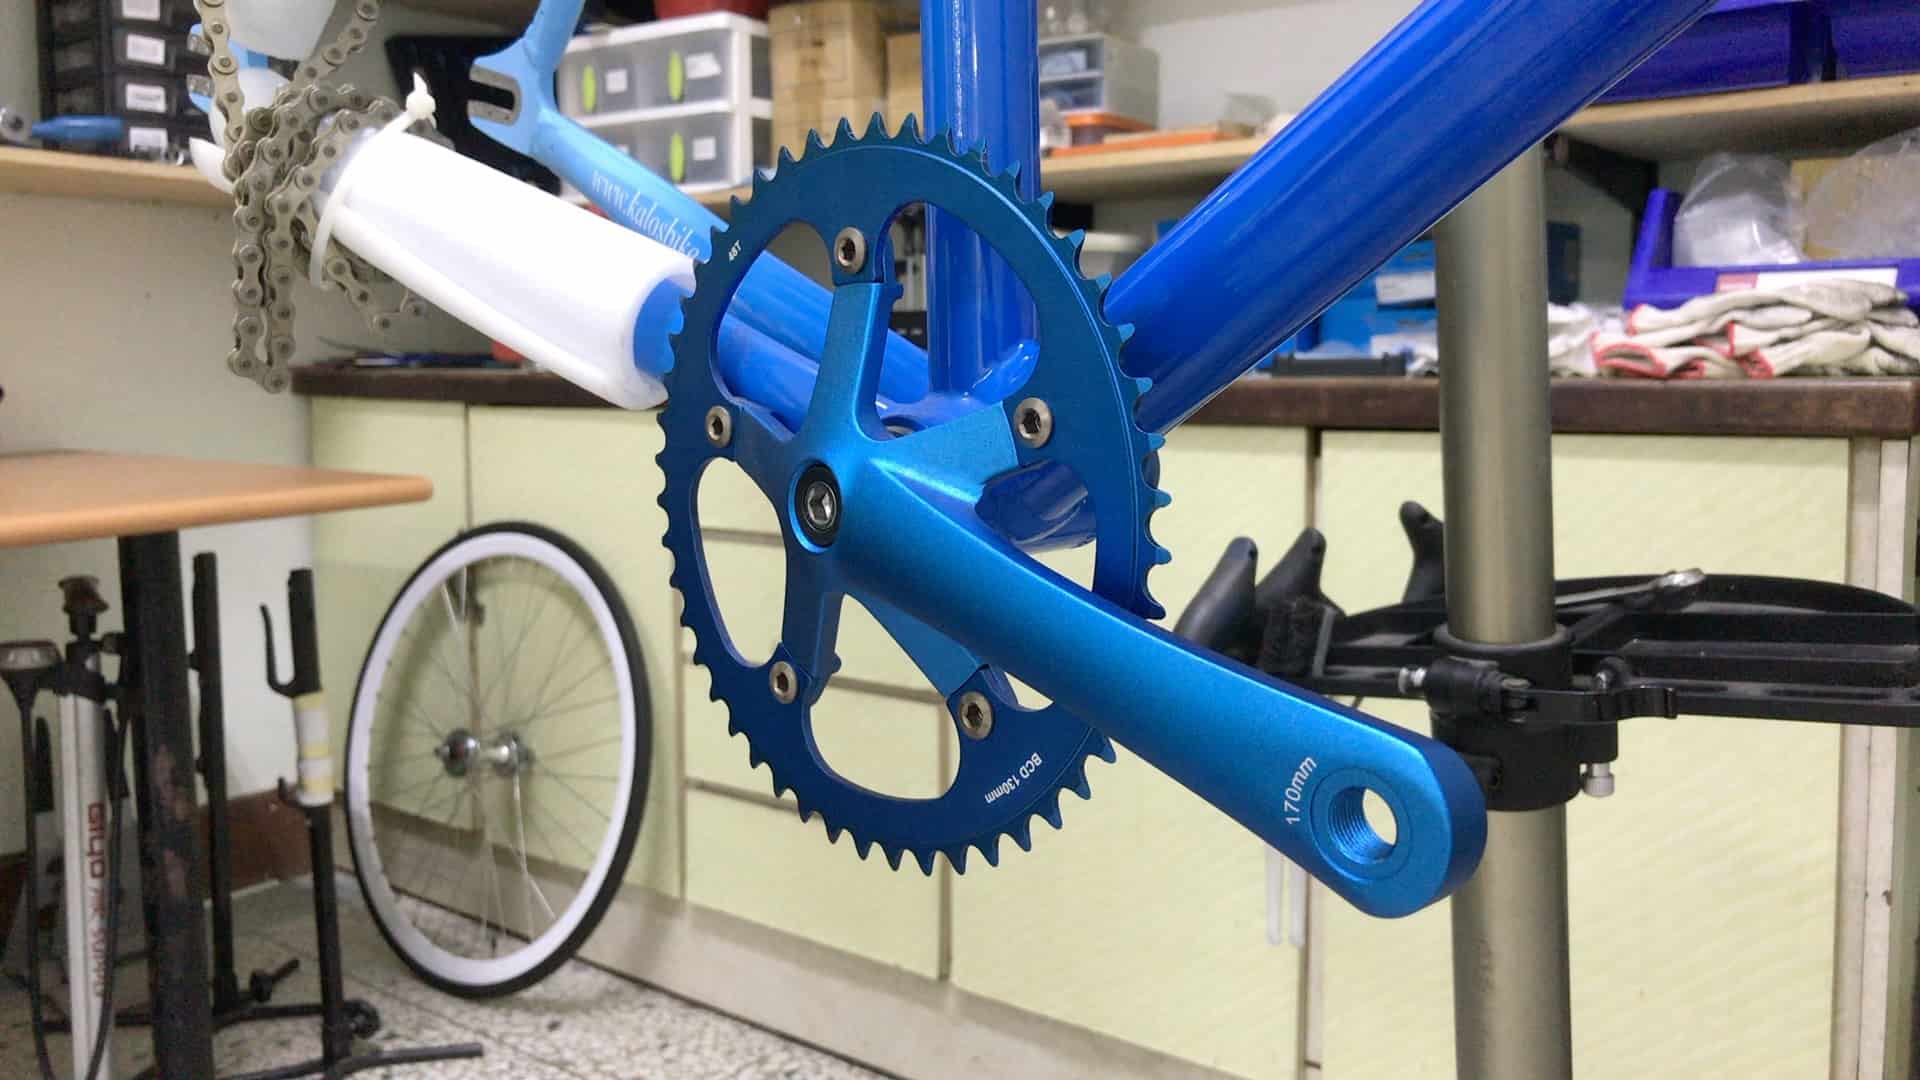 garmin bike computer